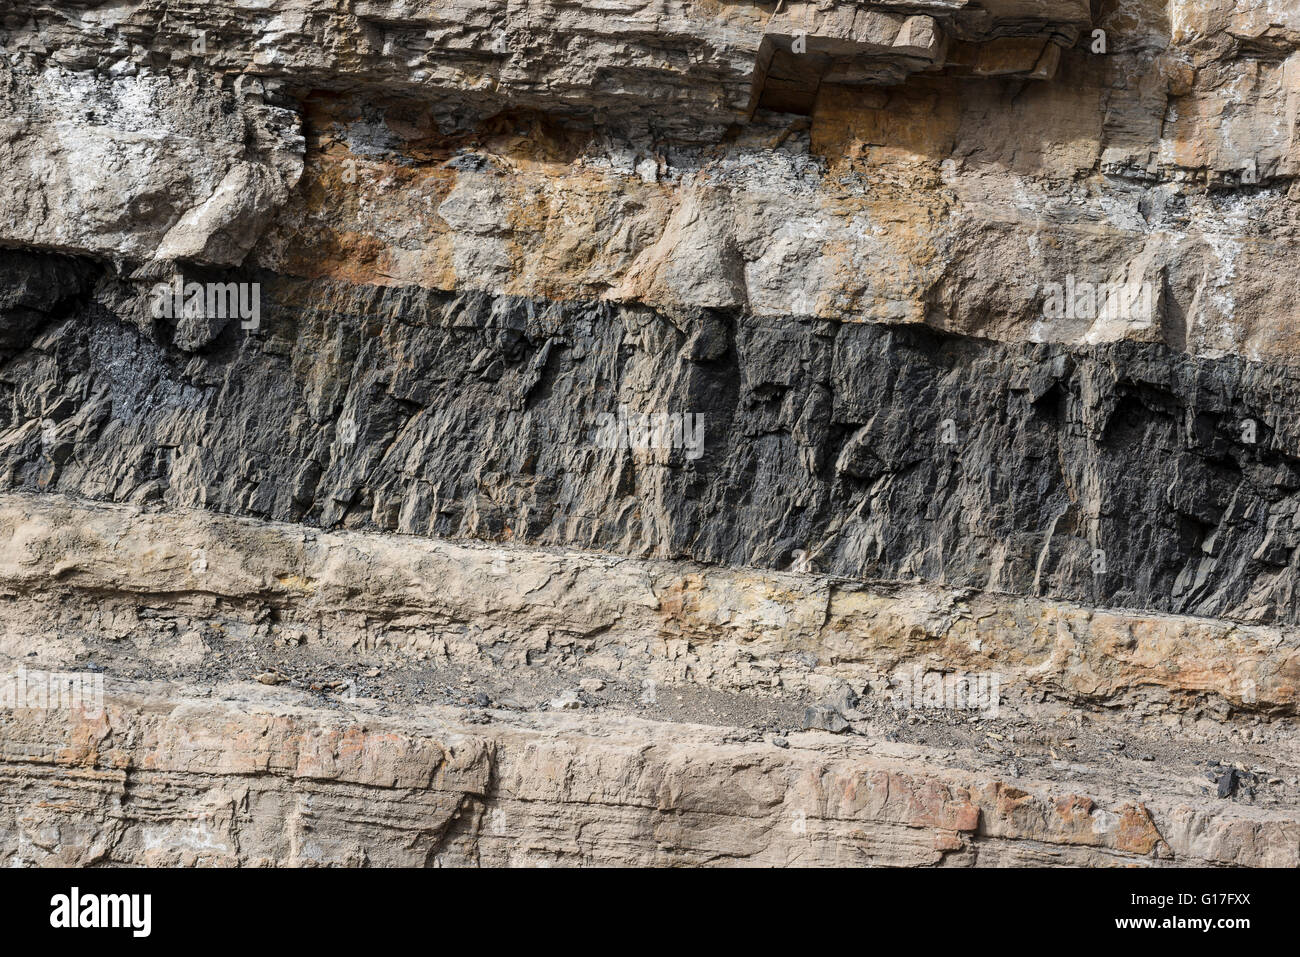 Veine de charbon dans la tranchée de Carbon County, Utah. Banque D'Images